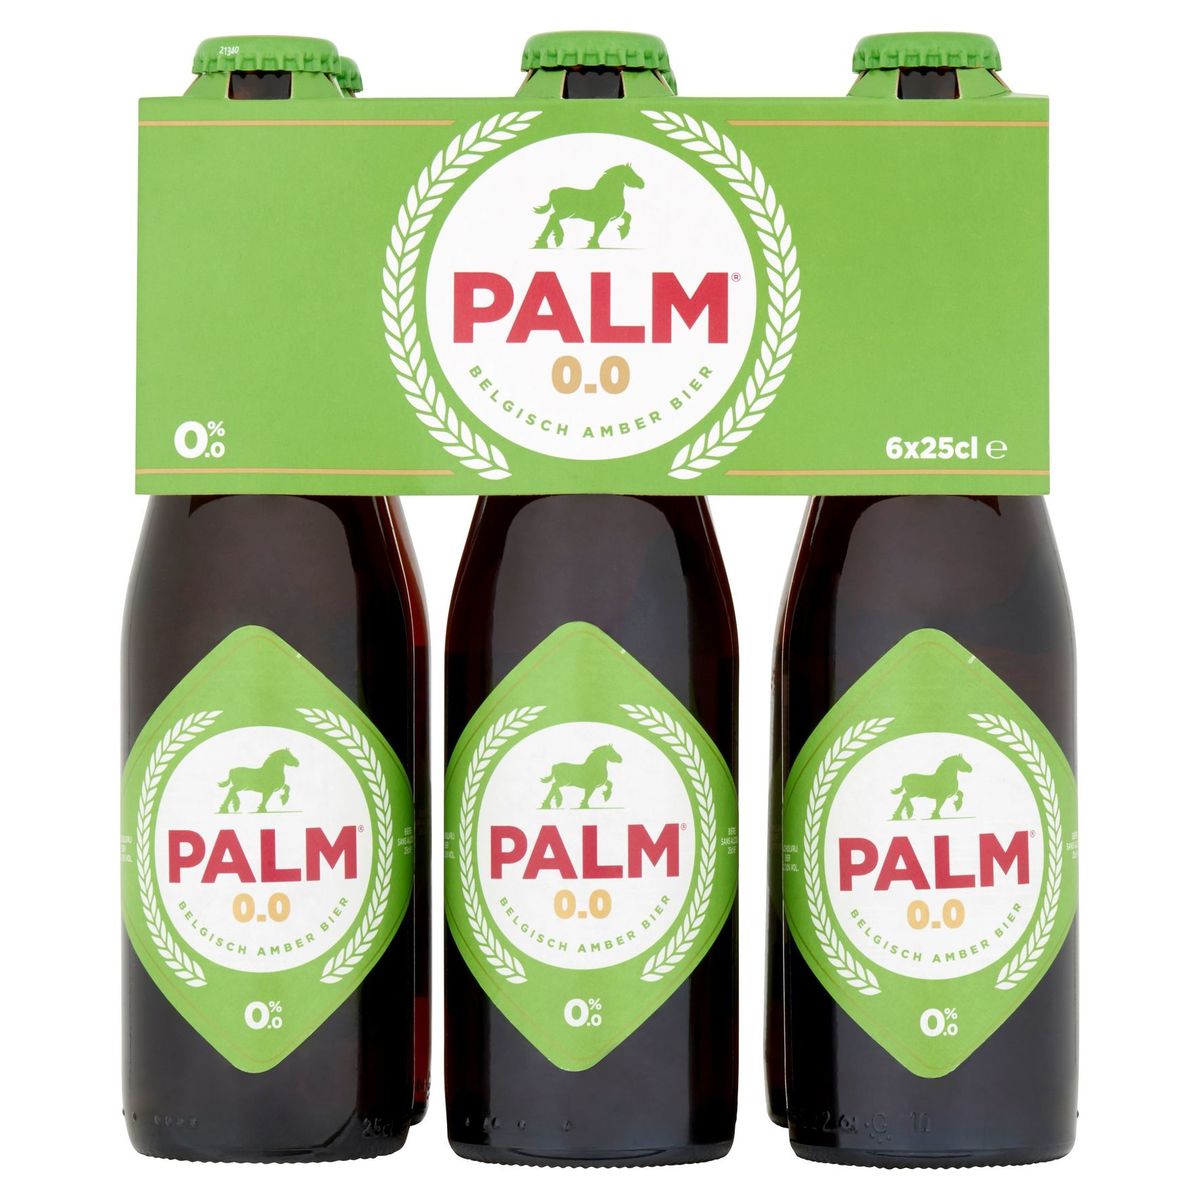 Palm 0.0 Belgisch Amber Bier Bouteilles 6 x 25 cl